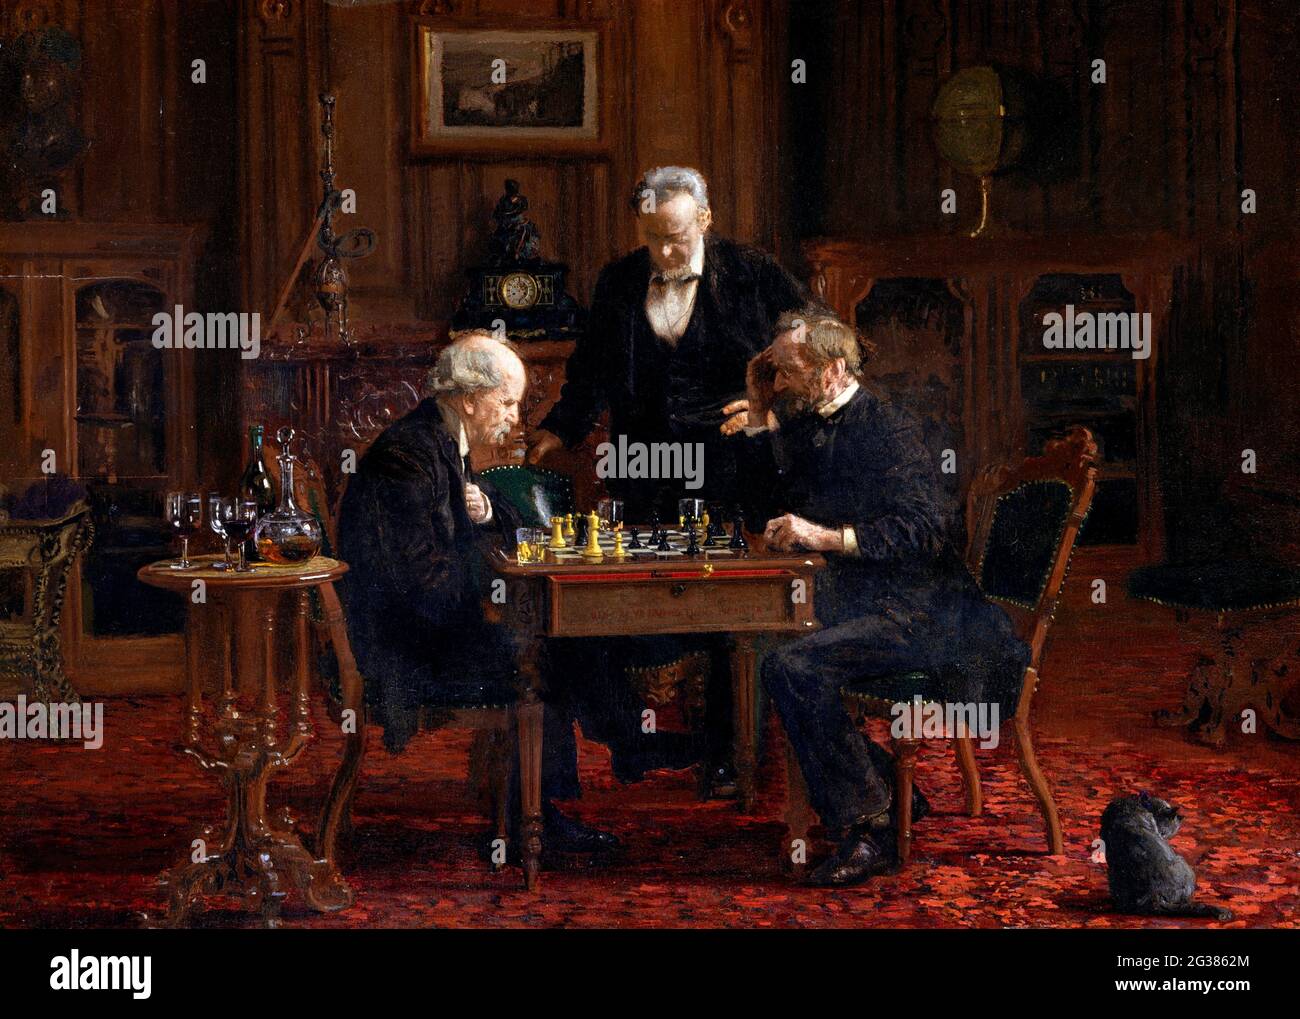 The Chess Players von Thomas Eakins (1844-1916), Öl auf Holz, 1876 Stockfoto